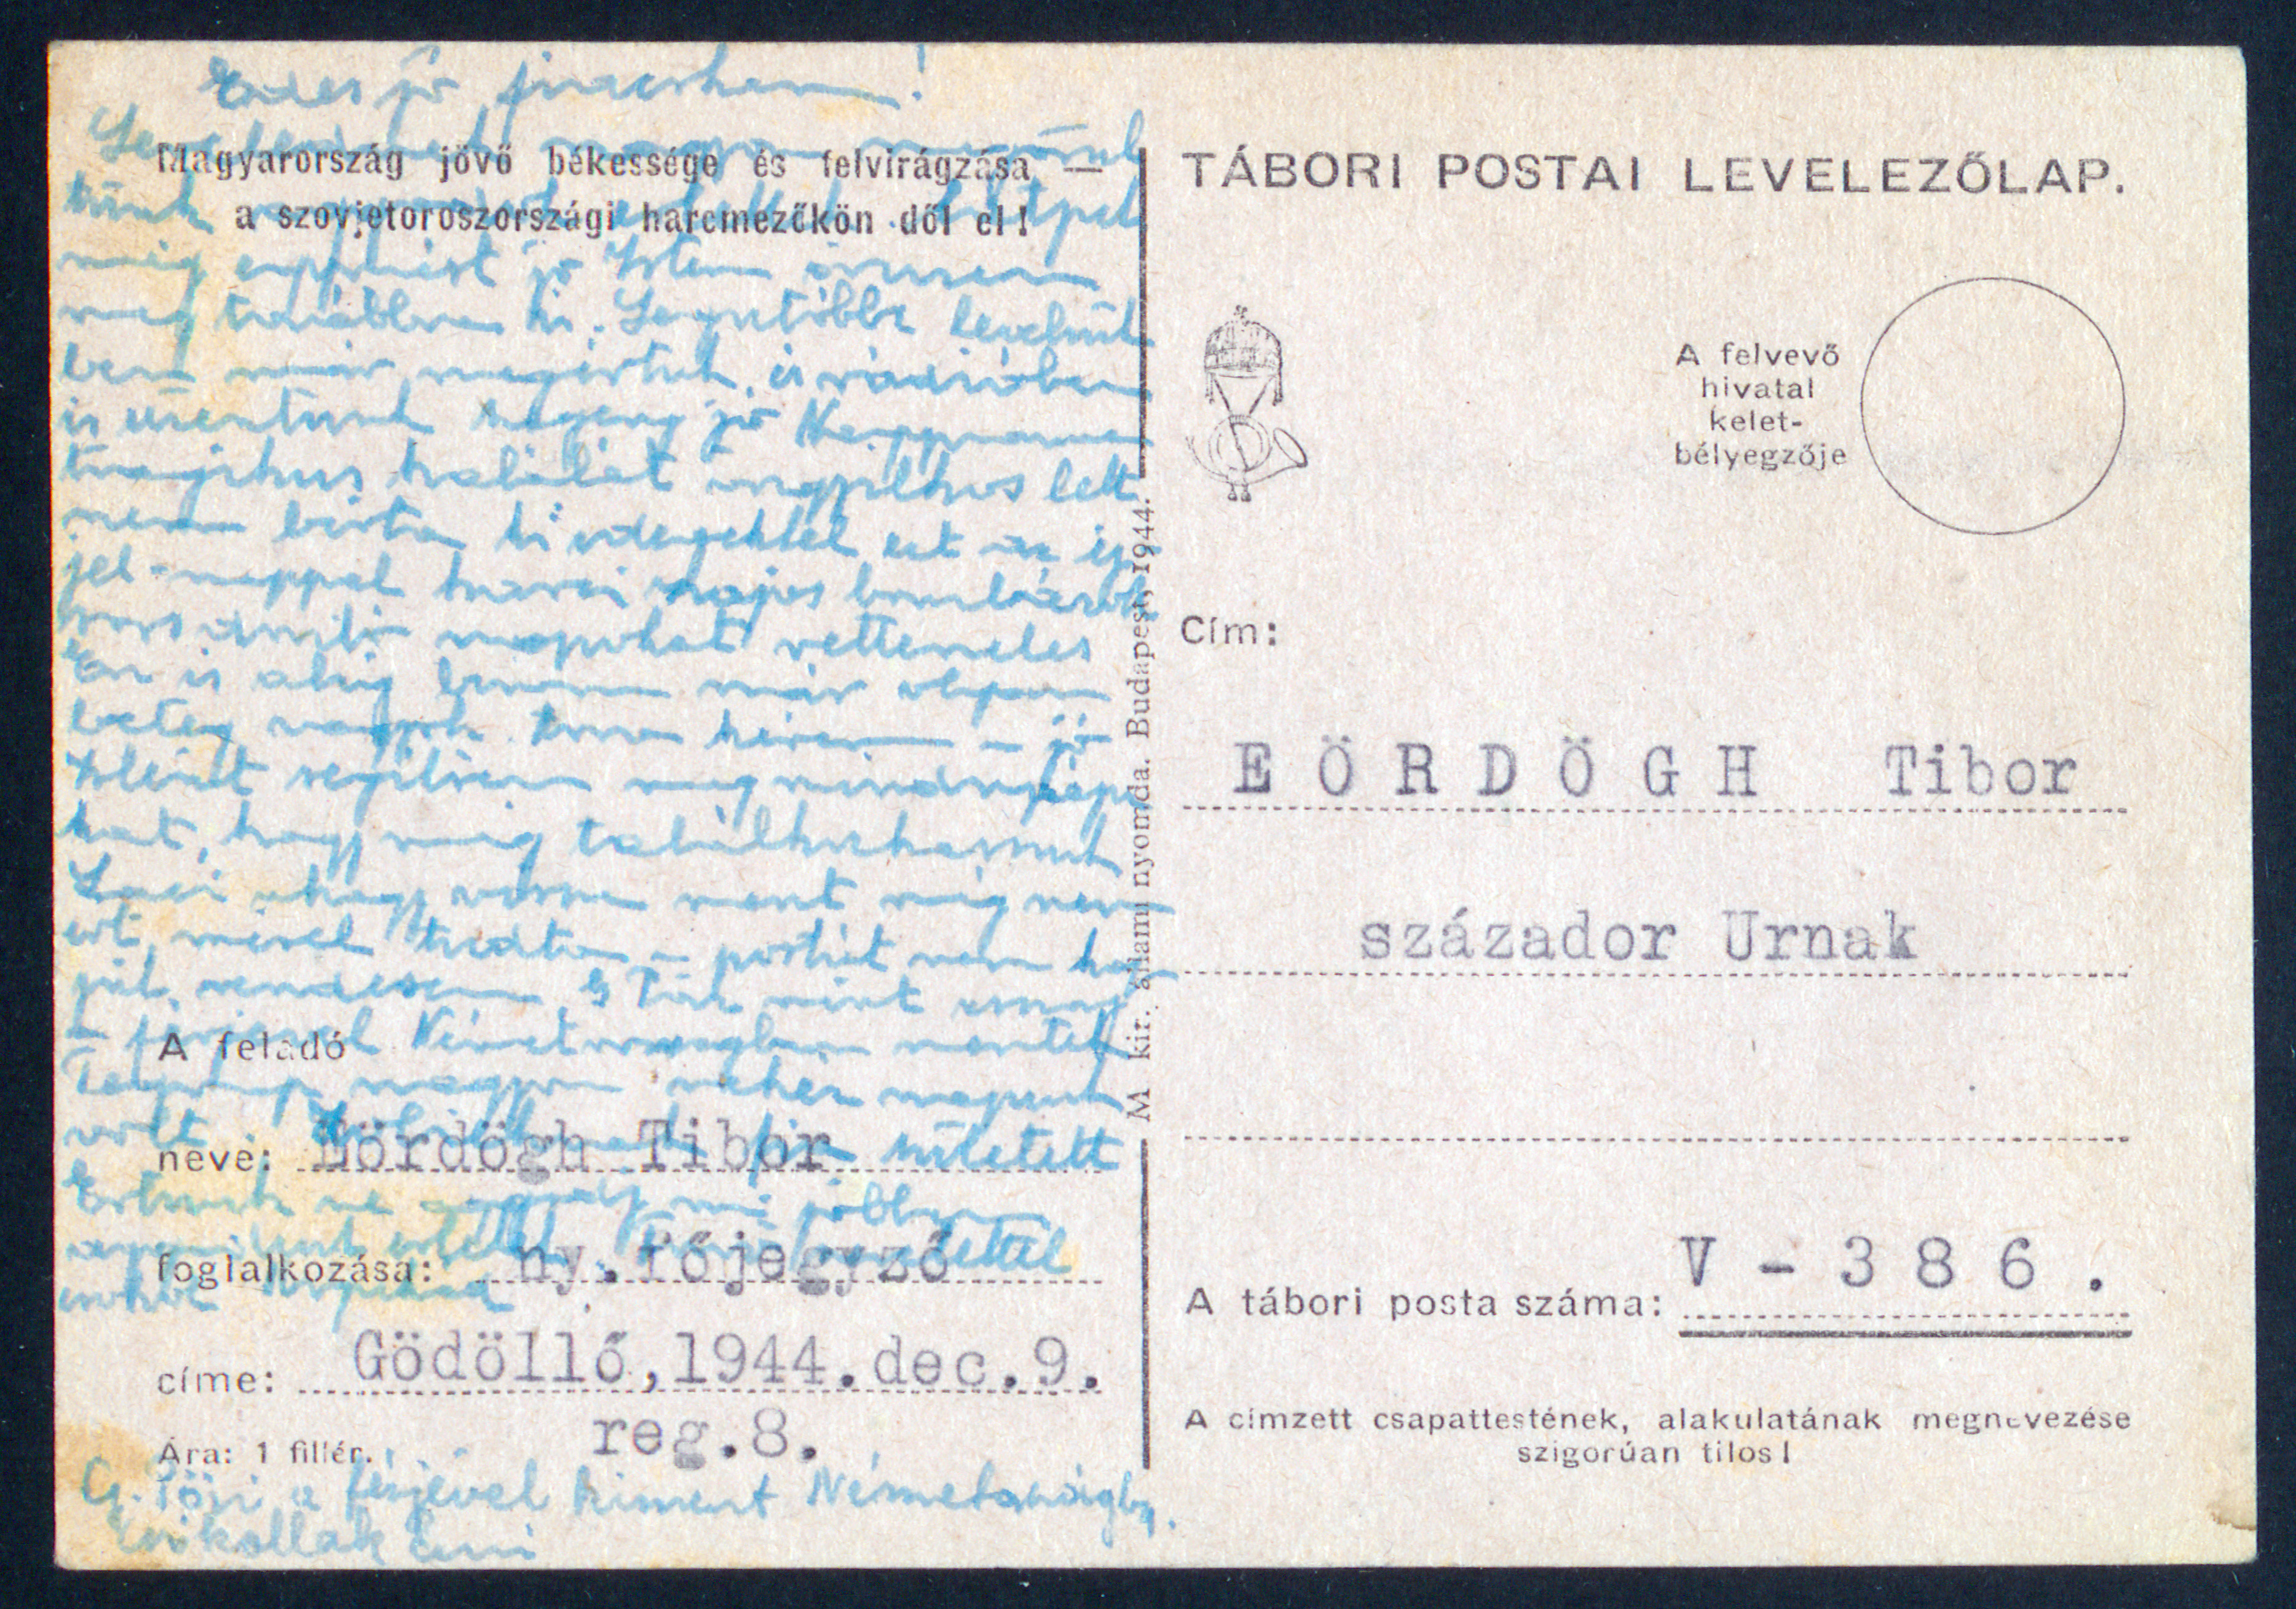 Tábori postai levelezőlap (V - 386), Eördögh Tibor százados úrnak, 1944. december 9.